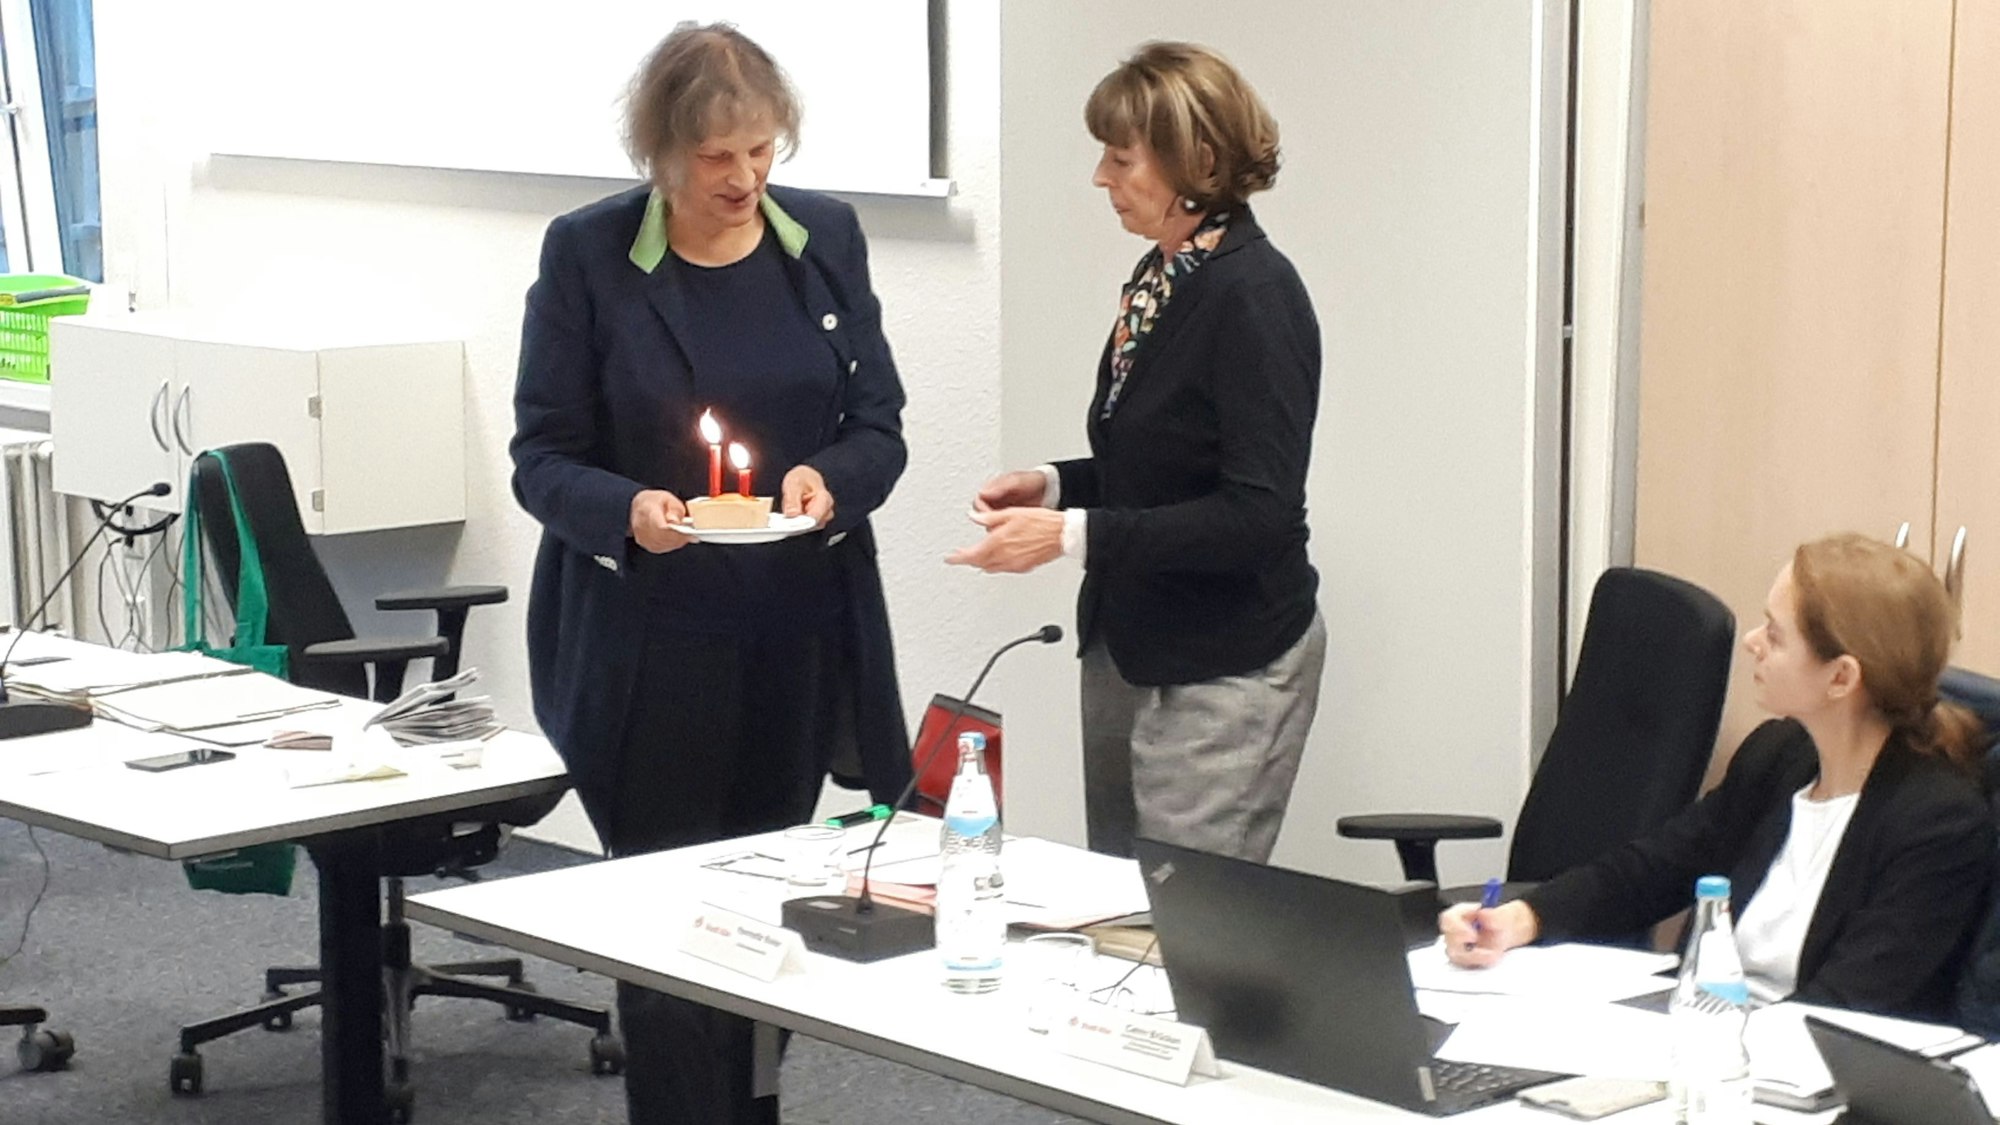 Bezirksbrgermeisterin Diana Siebert (l.) überreicht Henriette Reker die "Geburtstagstorte".